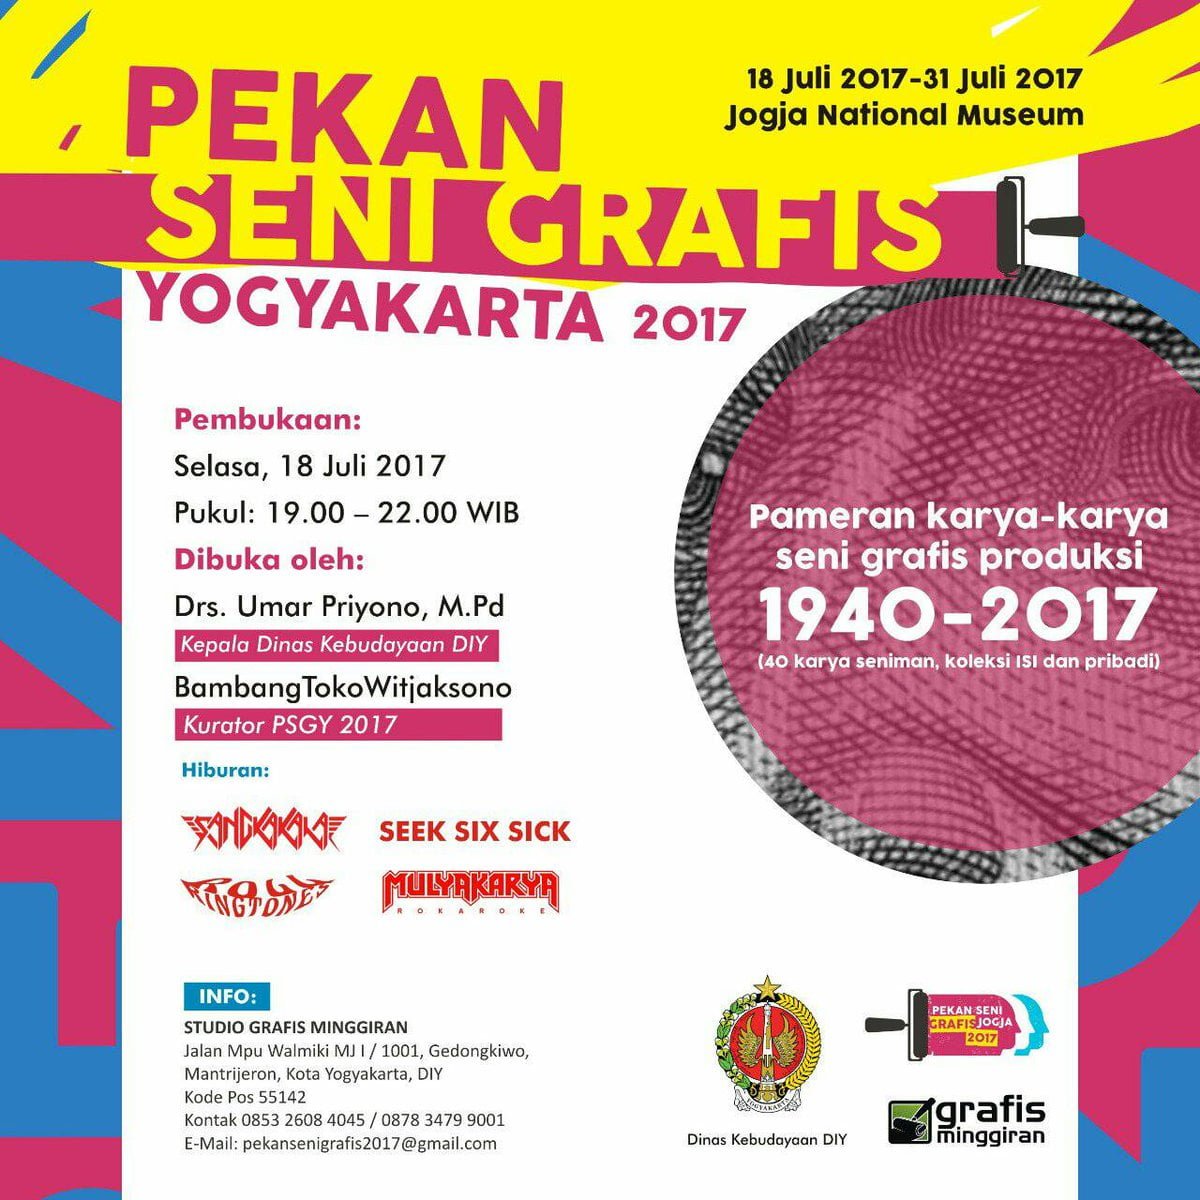 Pekan Seni Grafis Yogyakarta 2017 Di Jogja Nasional Museum